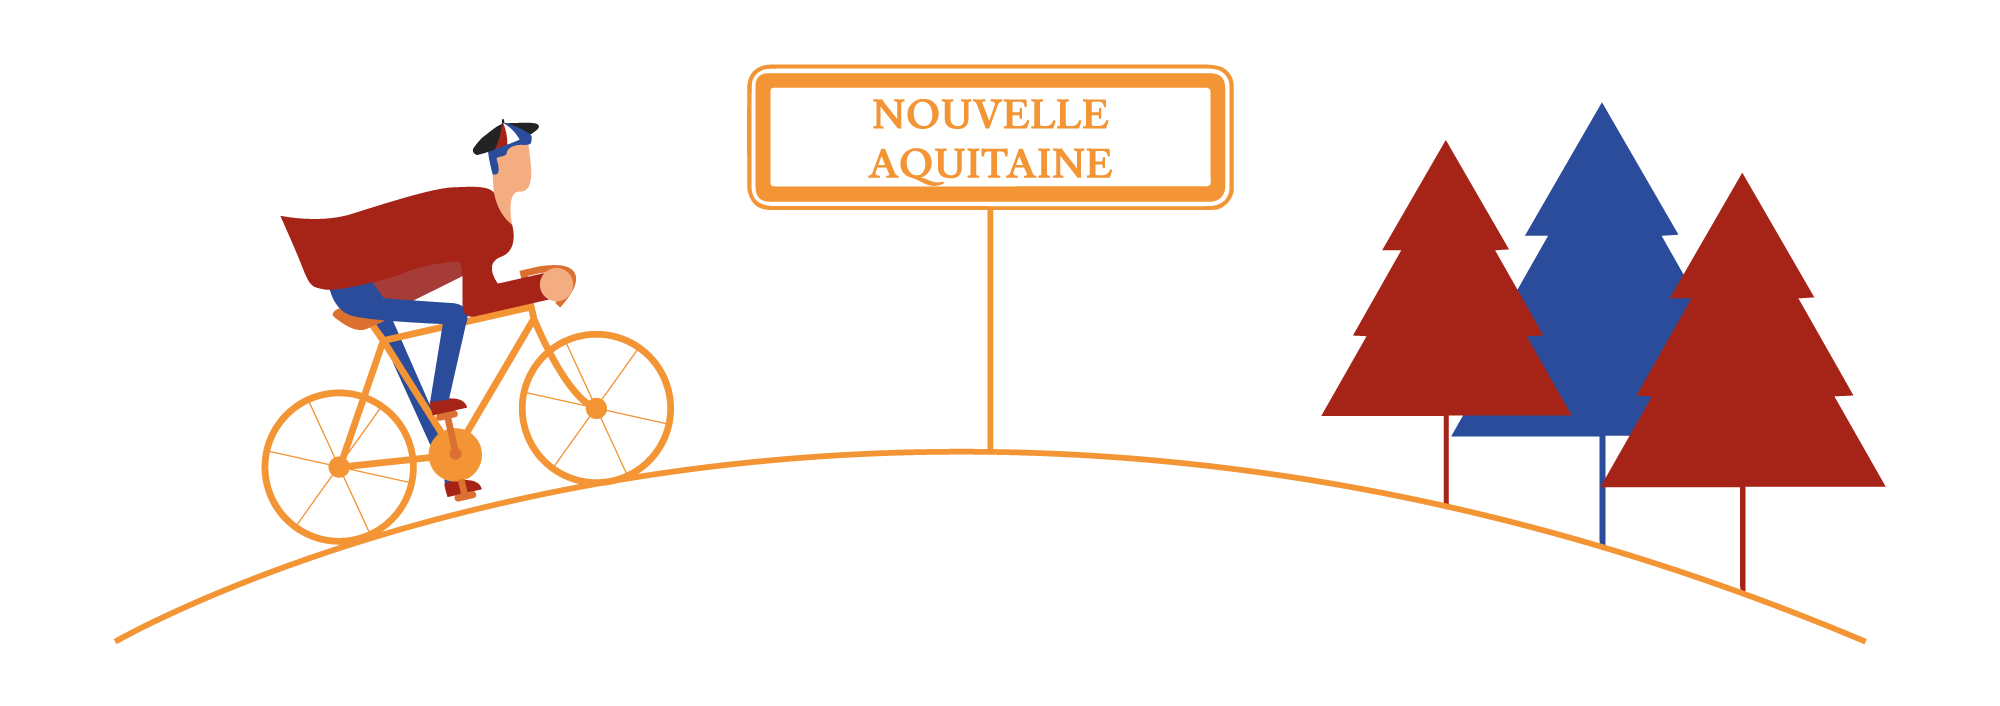 Spécialités de Nouvelle Aquitaine